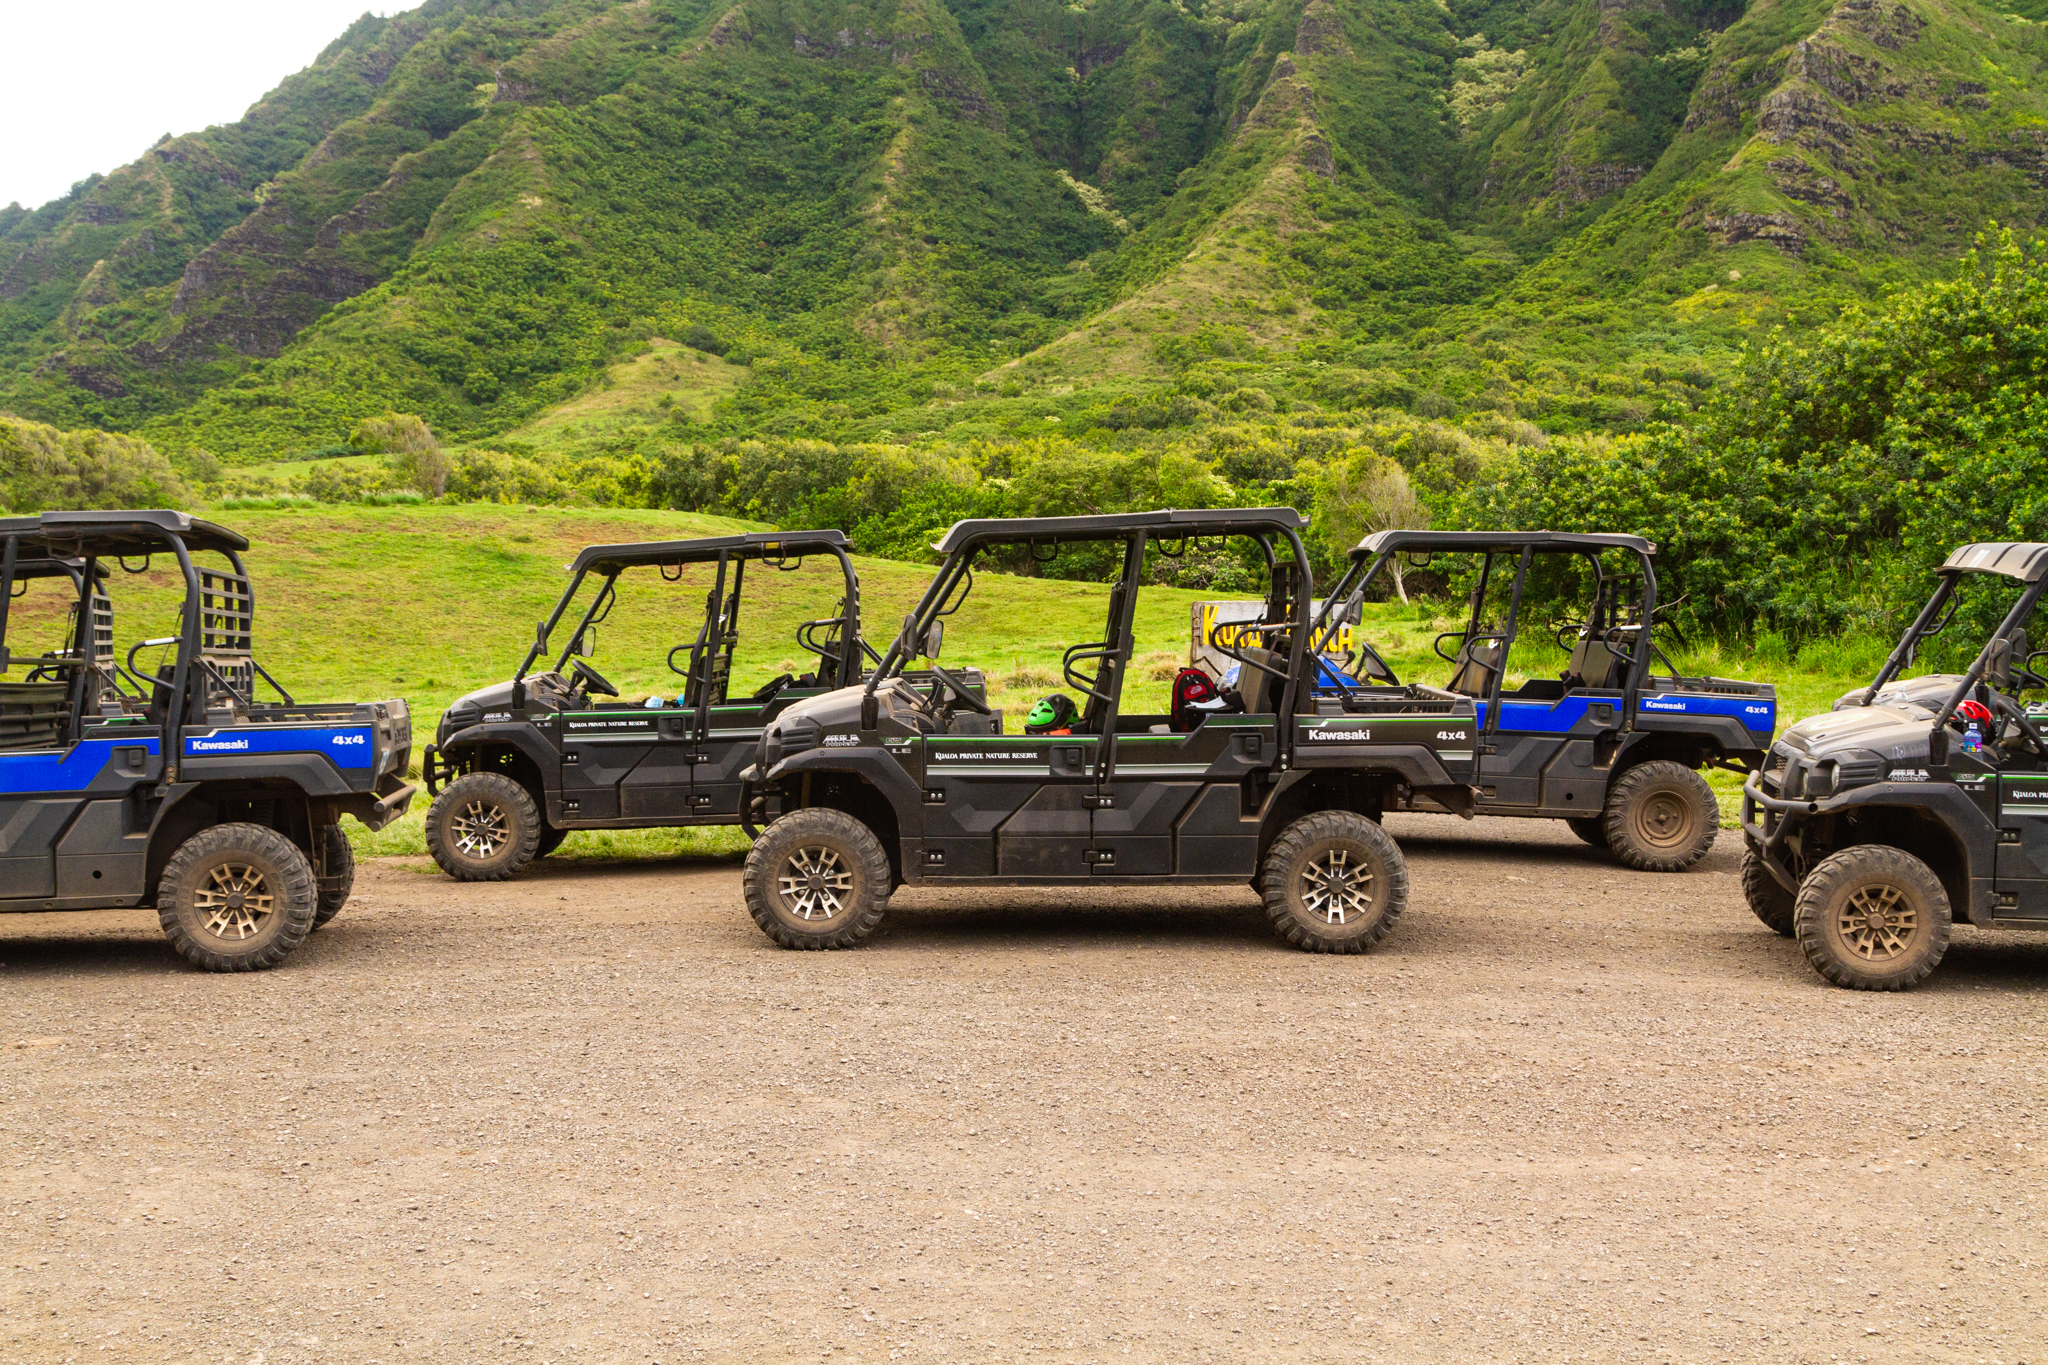 adventure guide to hawaii oahu and kauai press trip 2019 utv raptor tour at kualoa private nature reserve gp 9790